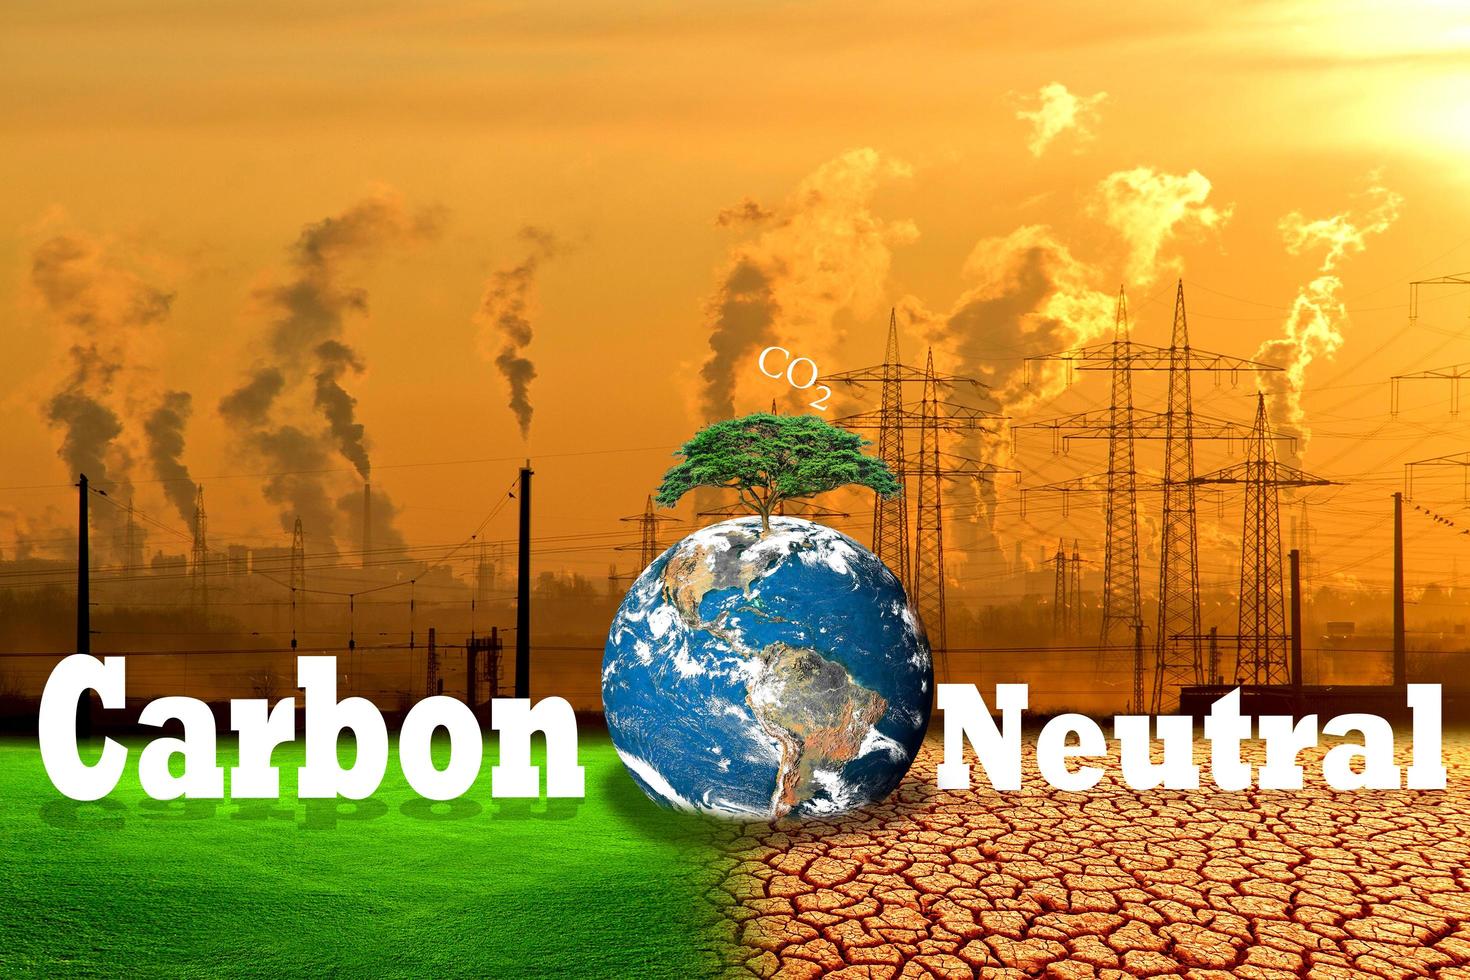 kol neutral minskning begrepp till förhindra global uppvärmningen foto